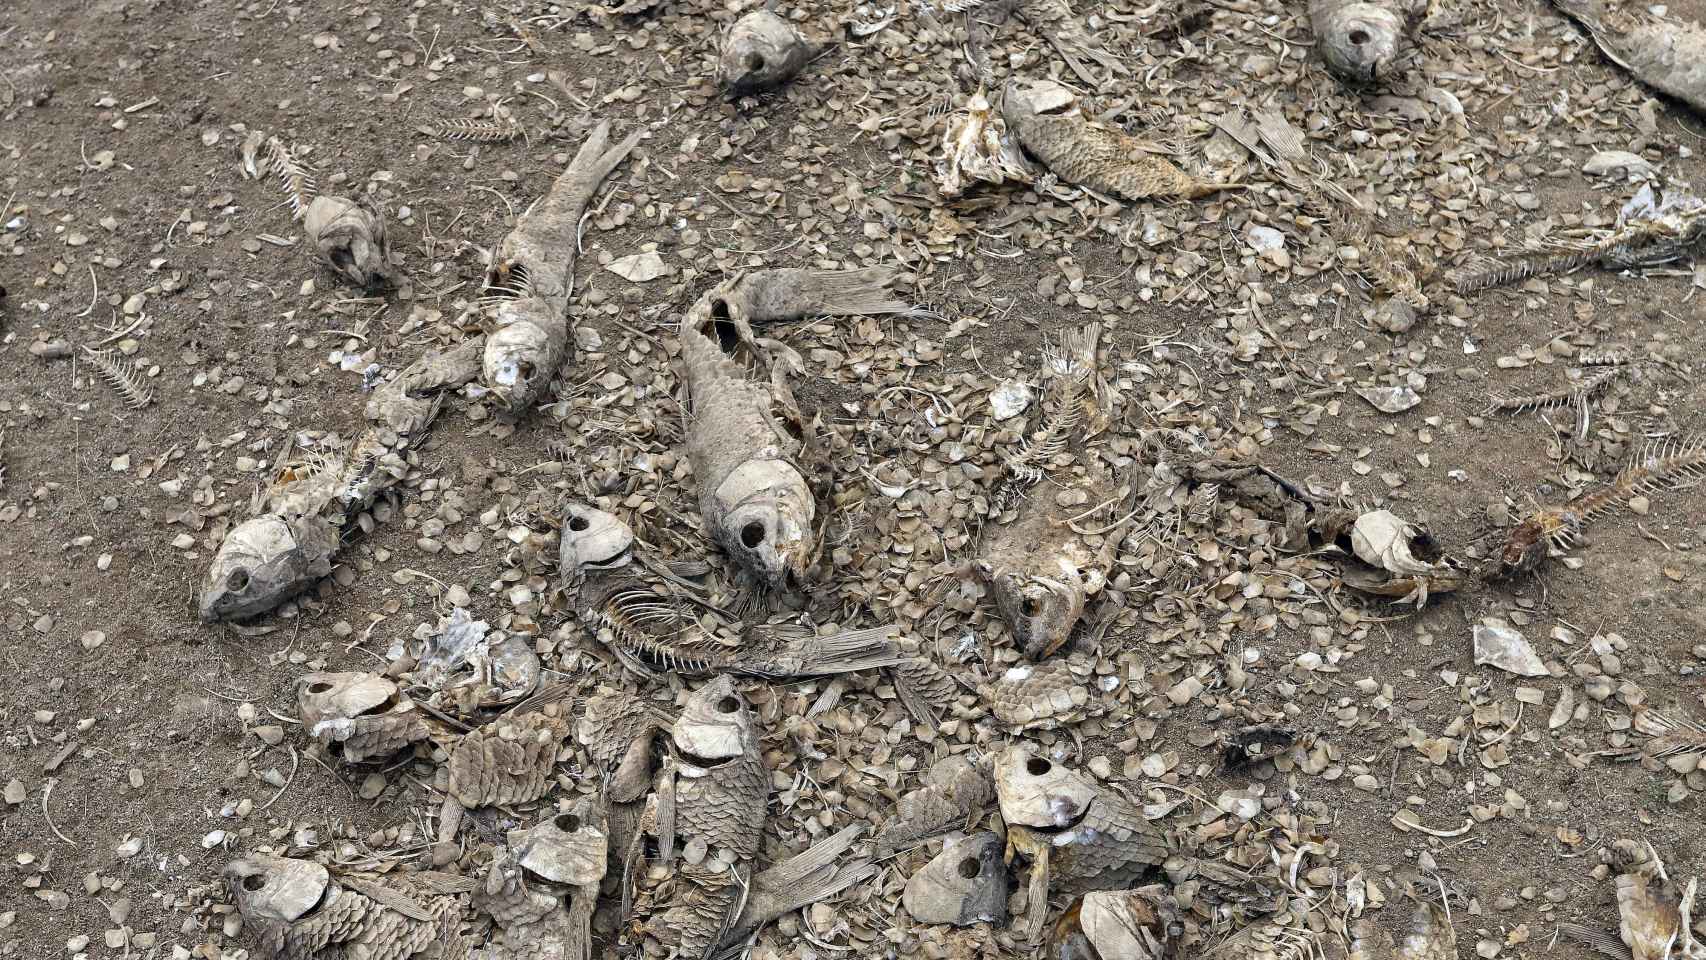 Numerosos peces muertos yacen en partes secas del lago Peñuelas